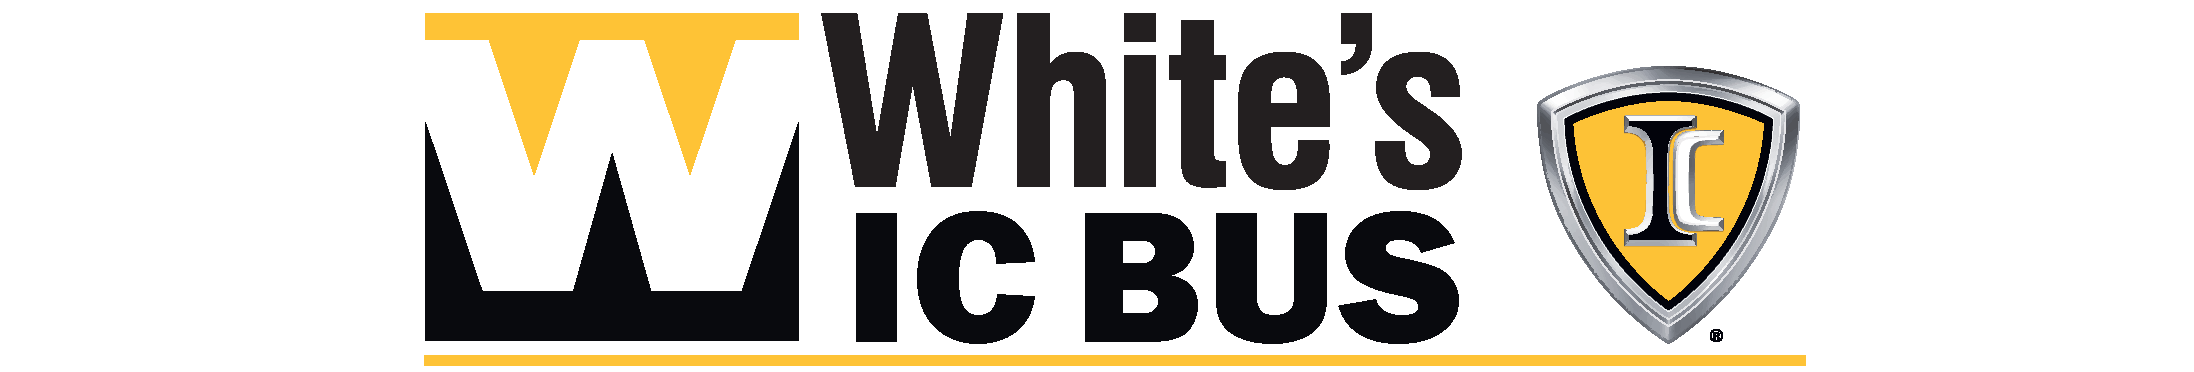 White's IC Bus logo